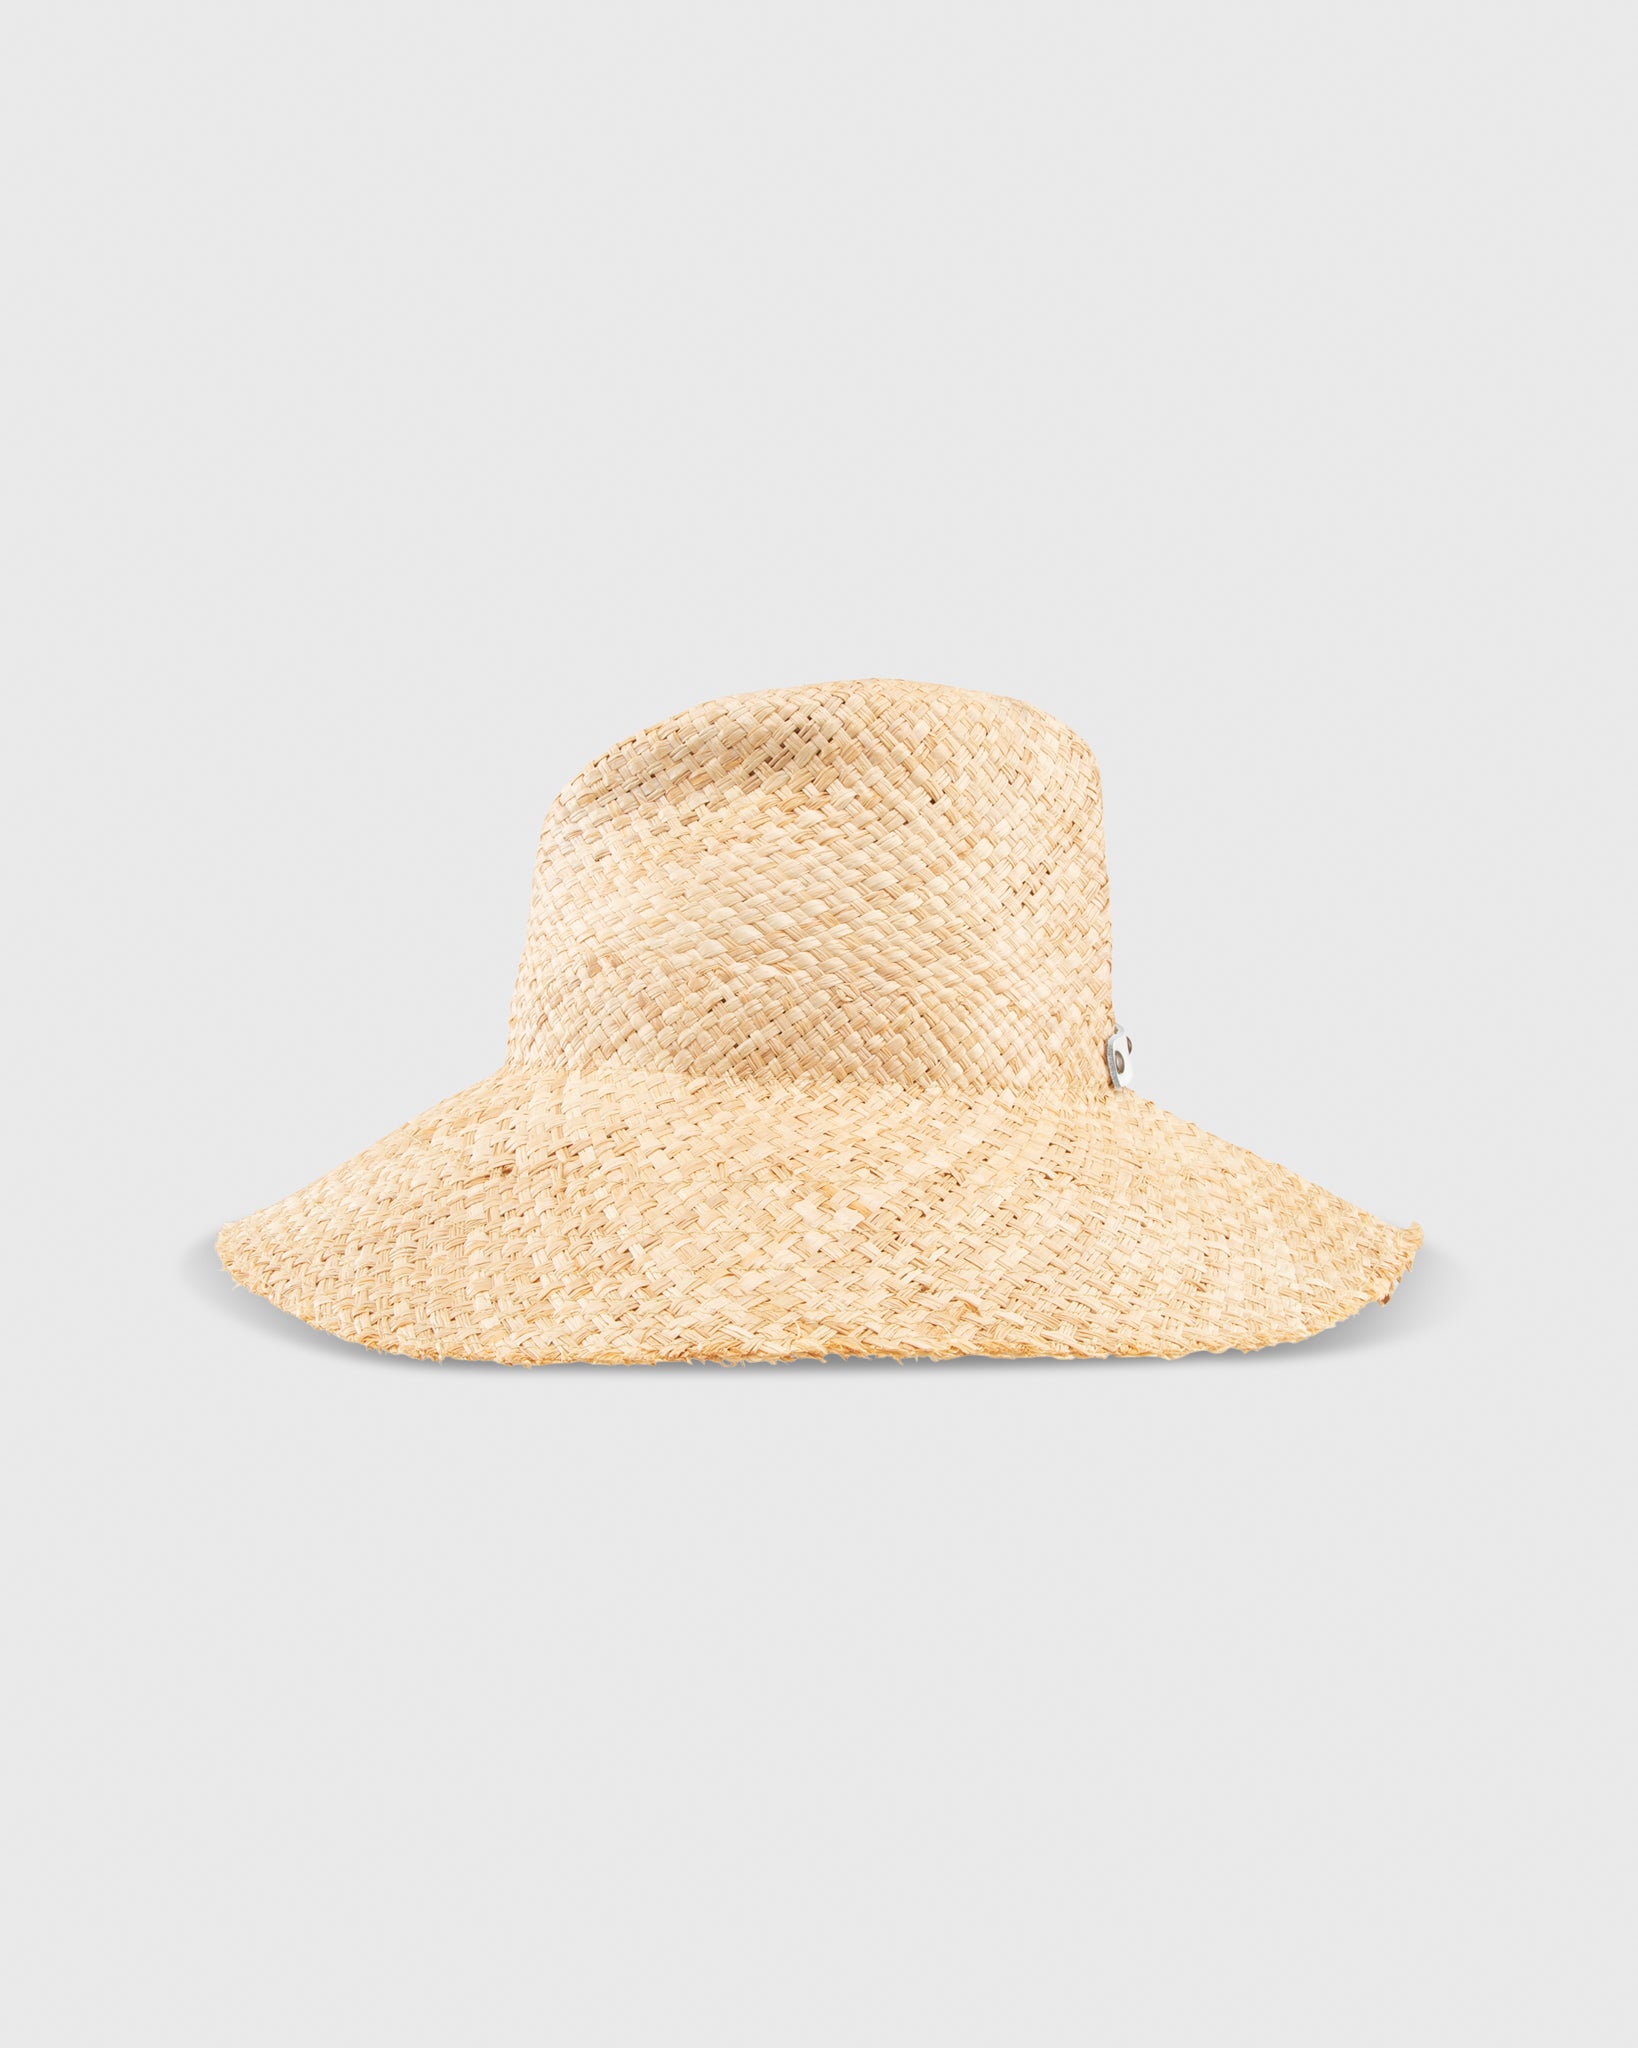 Commando Hat in Natural/White Trim